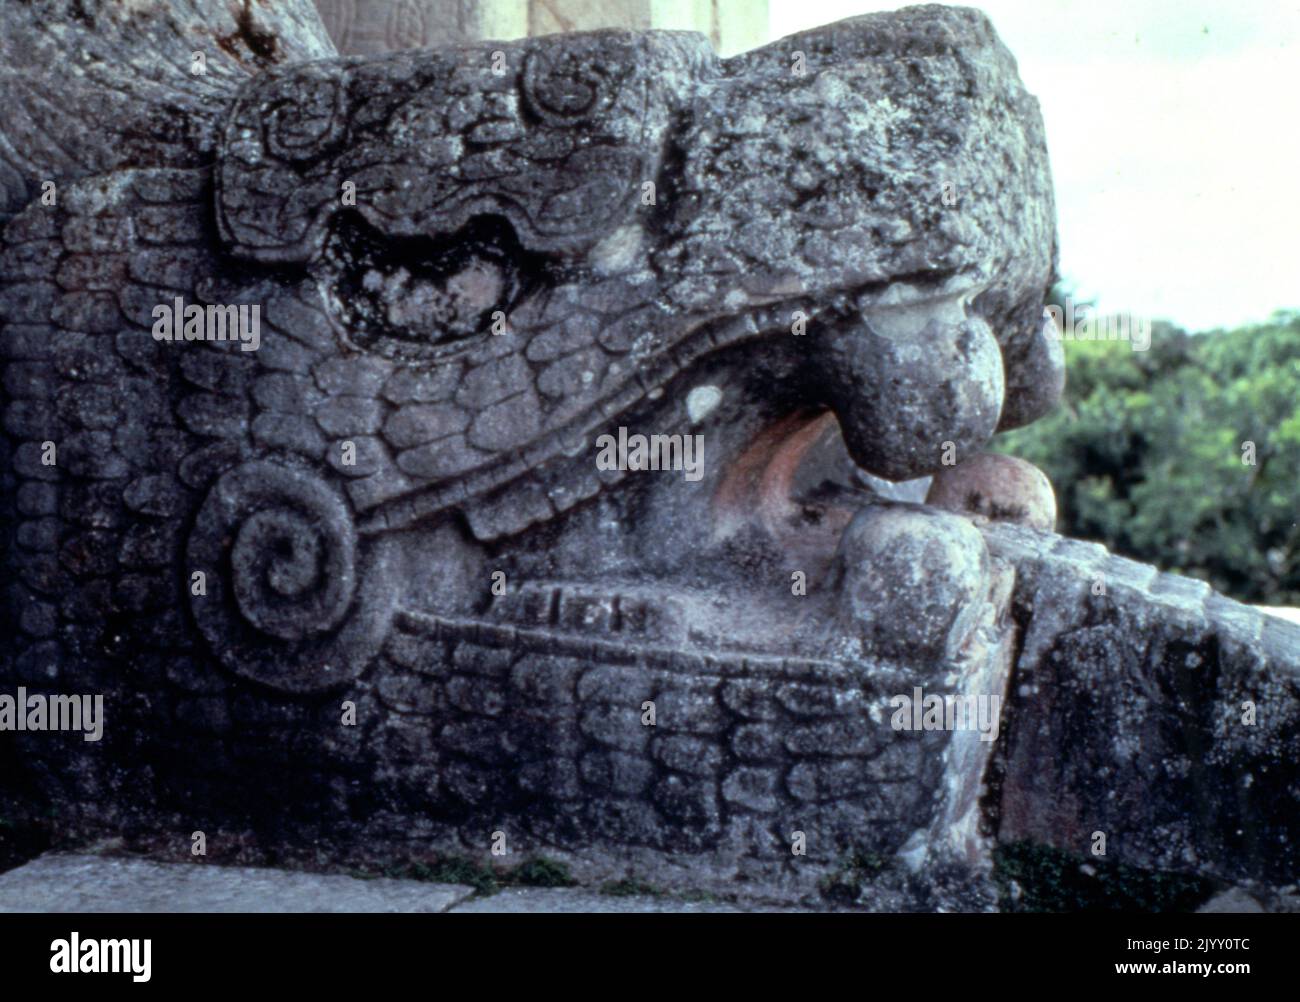 Relief représentant des joueurs de balle à la Grande salle de bal de Chichen Itza, une ville pré-colombienne construite par le peuple Maya de la période du terminal Classic. Chichen Itza a été un point focal majeur dans les basses terres du Nord Maya de la fin du Classic (c. AD 600-900), dans la partie précoce de la période classique de la poste (c. ANNONCE 900-1200). Le Great ball court a été utilisé pour jouer au jeu de ballon Mesoamerican. C'est le plus grand et le mieux conservé terrain de balle de l'ancienne Mésoamérique.[41] il mesure 168 par 70 mètres (551 par 230 pieds). Banque D'Images